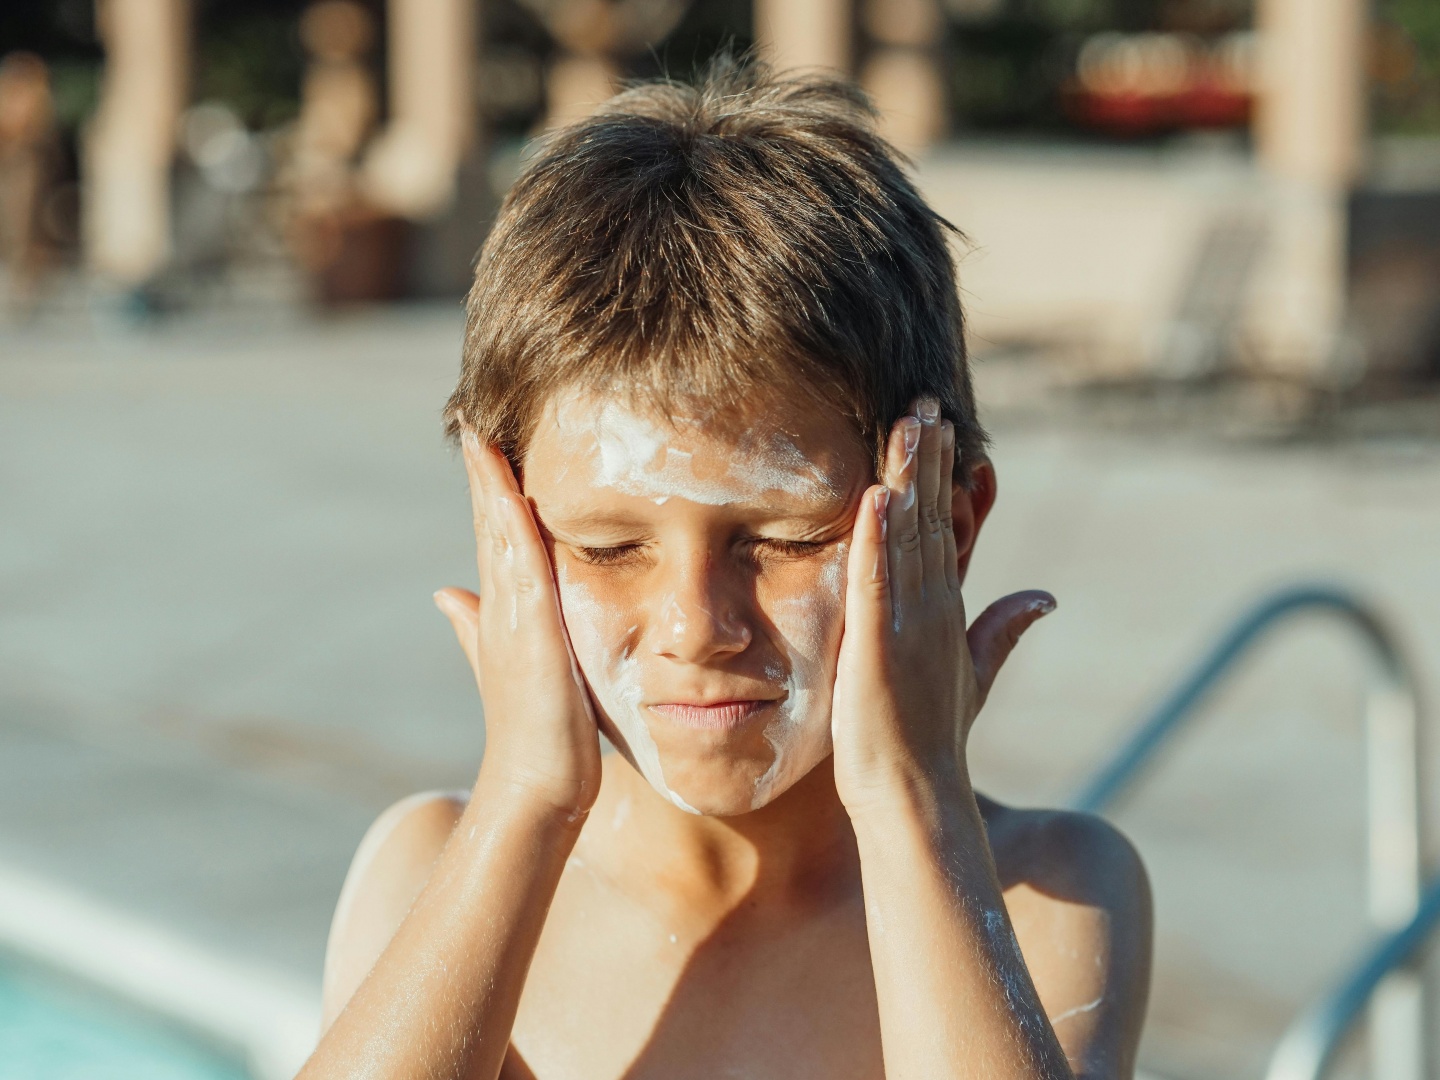 Proteger a pele: o cancro da pele e os perigos do sol